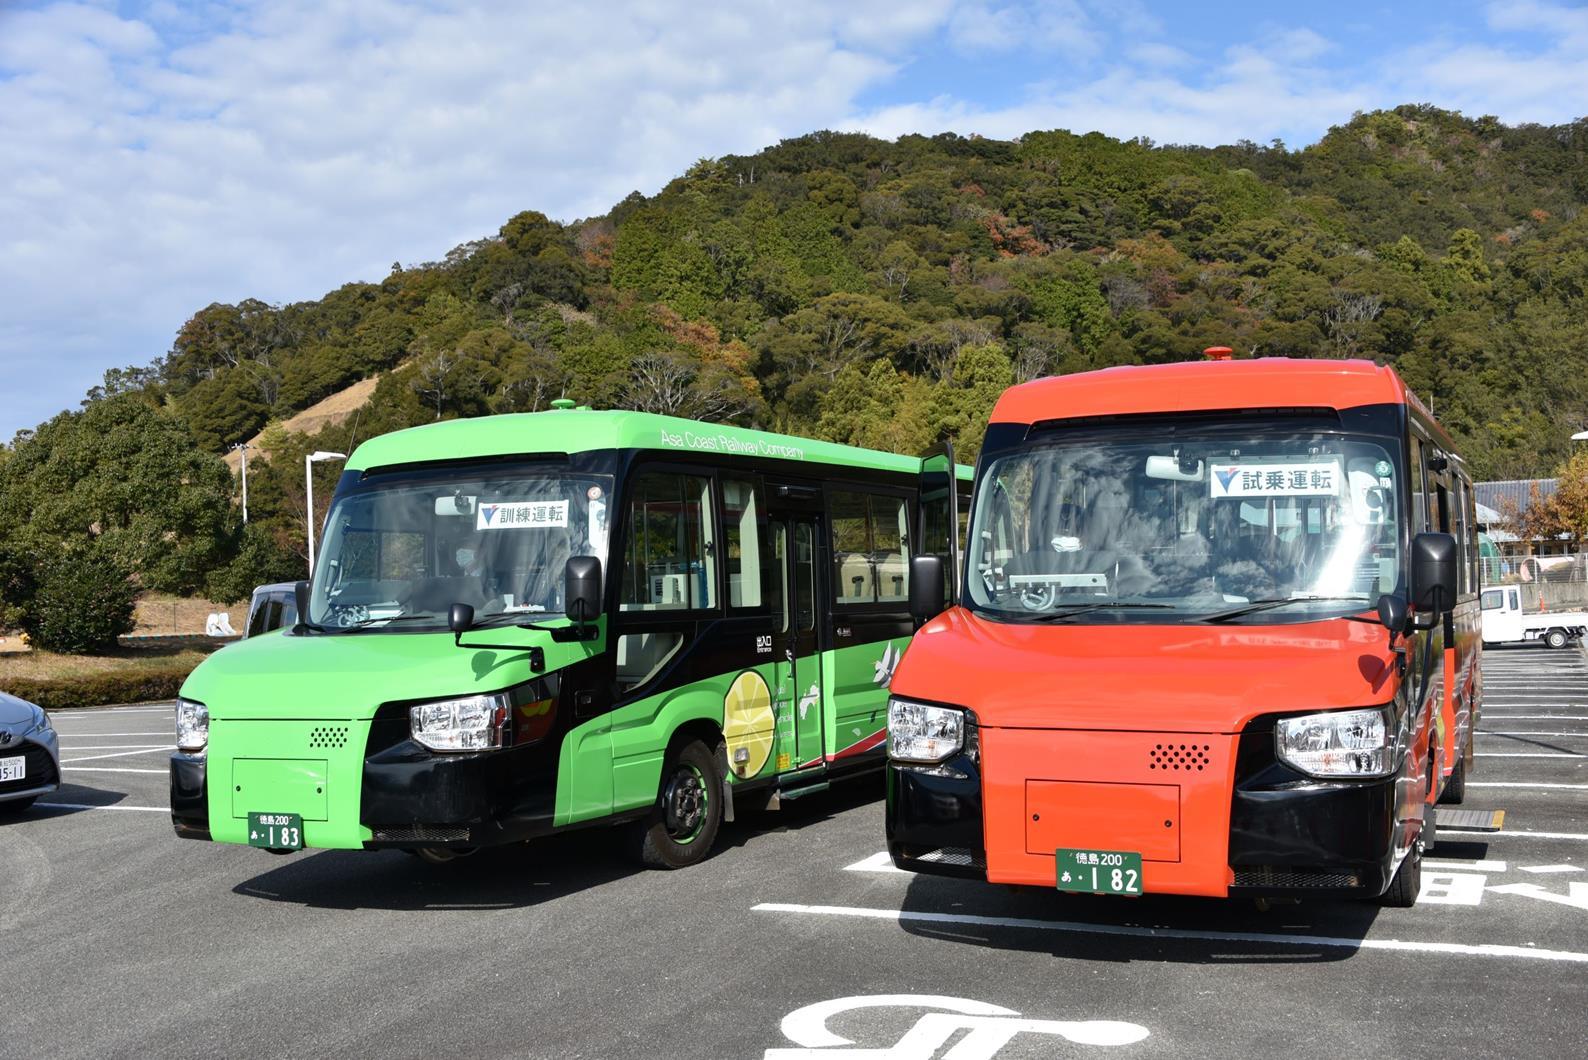 A Toyota által épített, kétéltű buszok a síneken és az utakon is egyaránt otthon érzik magukat (képek forrása: Railway Gazette)